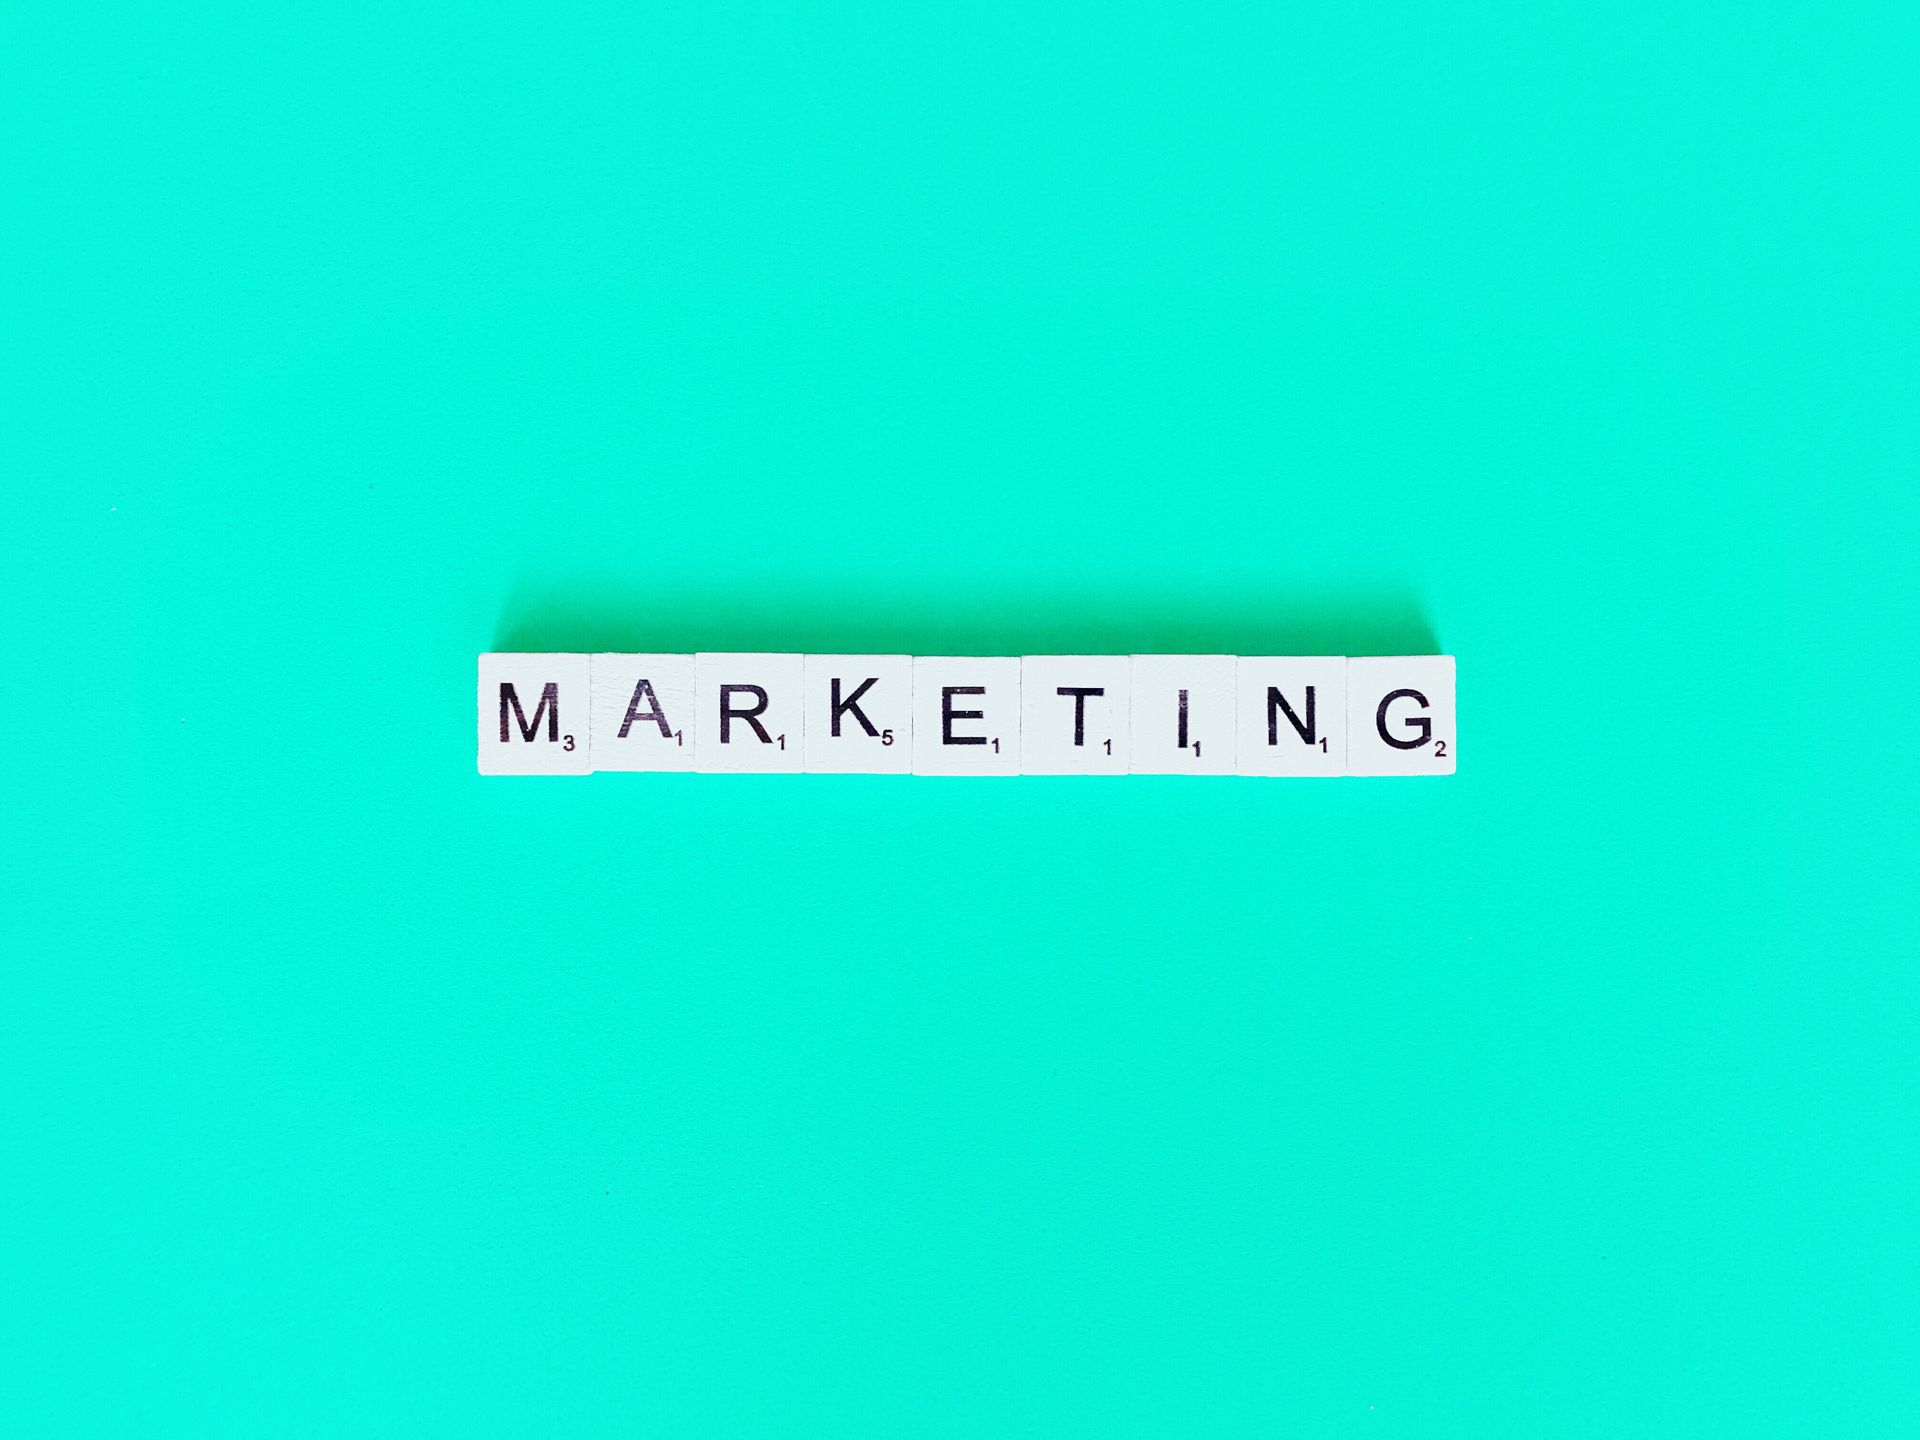 a palavra marketing está escrita em blocos de scrabble sobre um fundo verde.